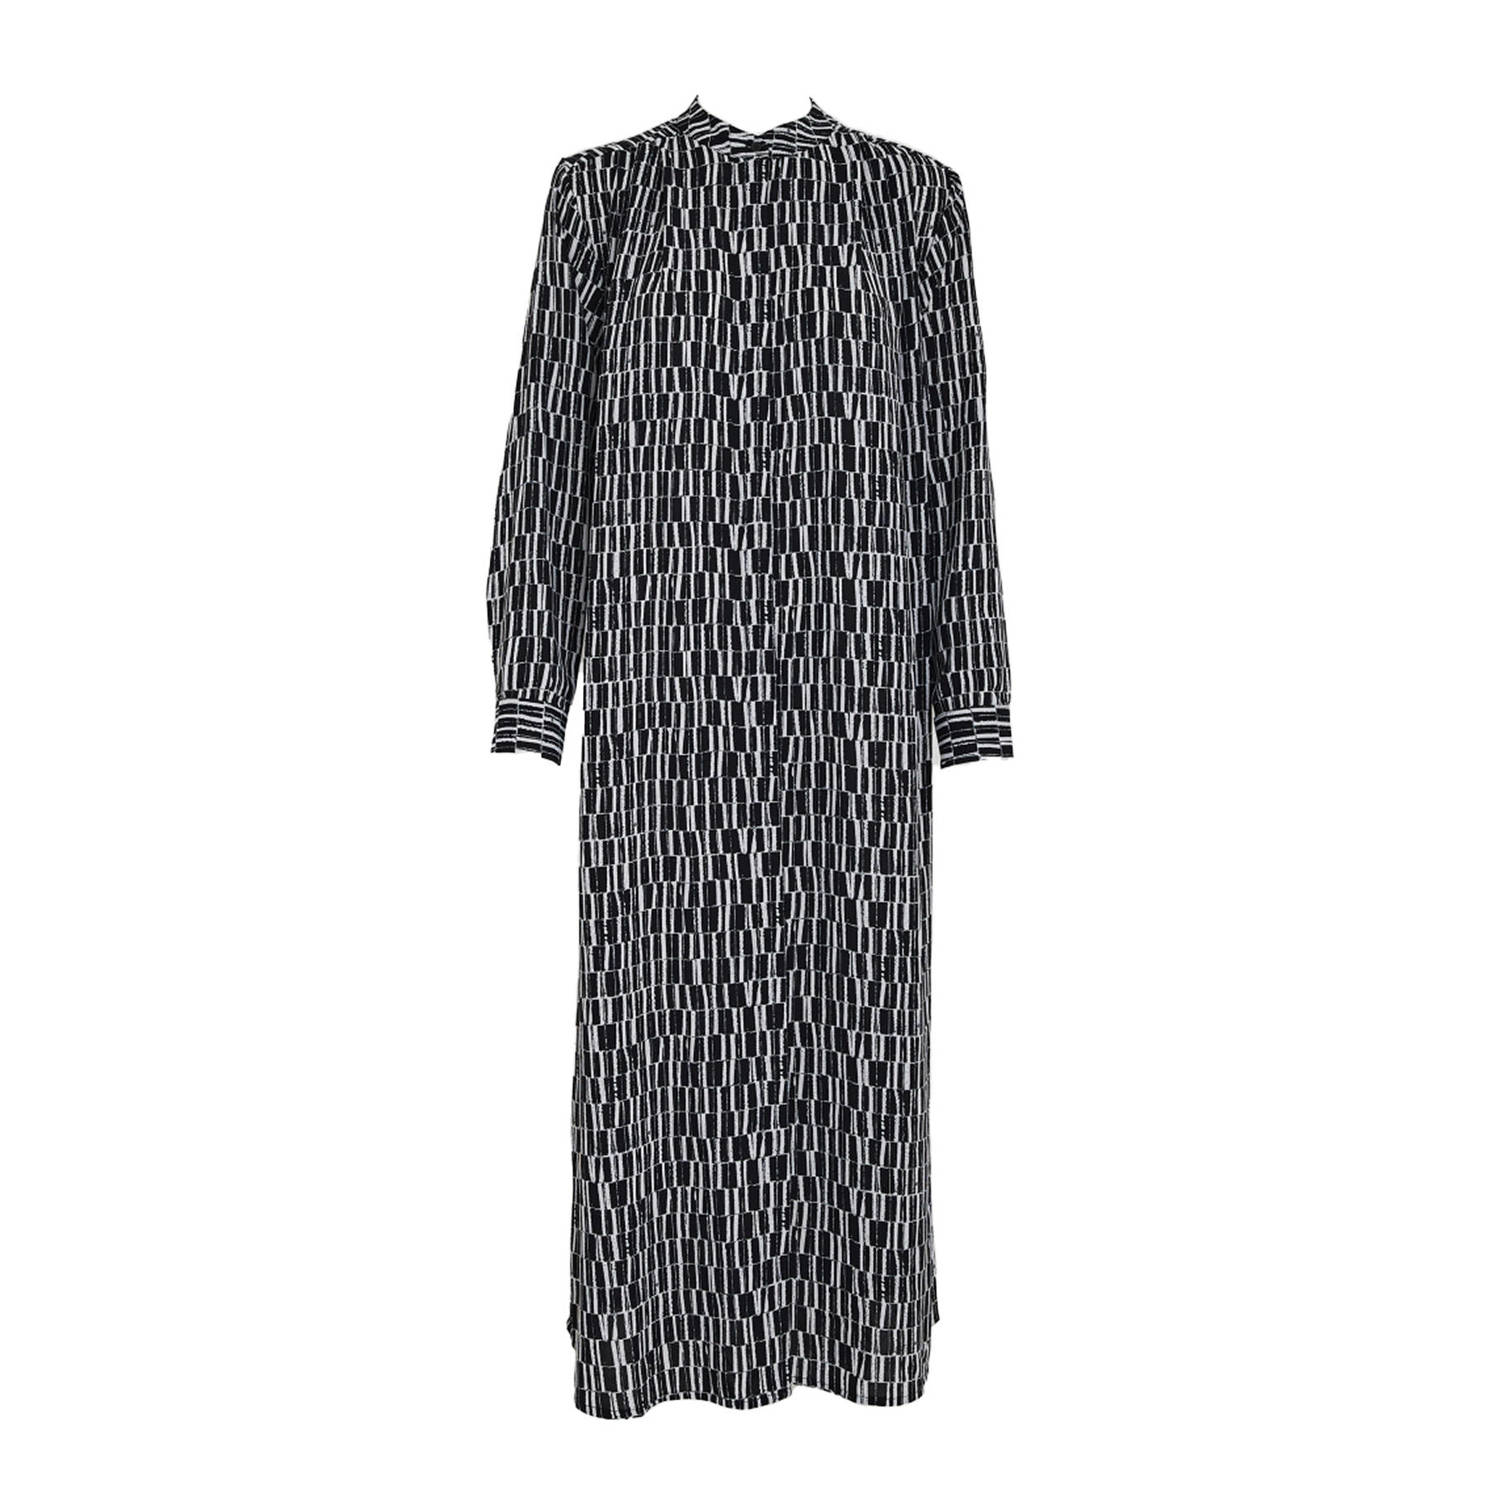 Peppercorn blousejurk Philippa Maxi Dress met all over print zwart grijs